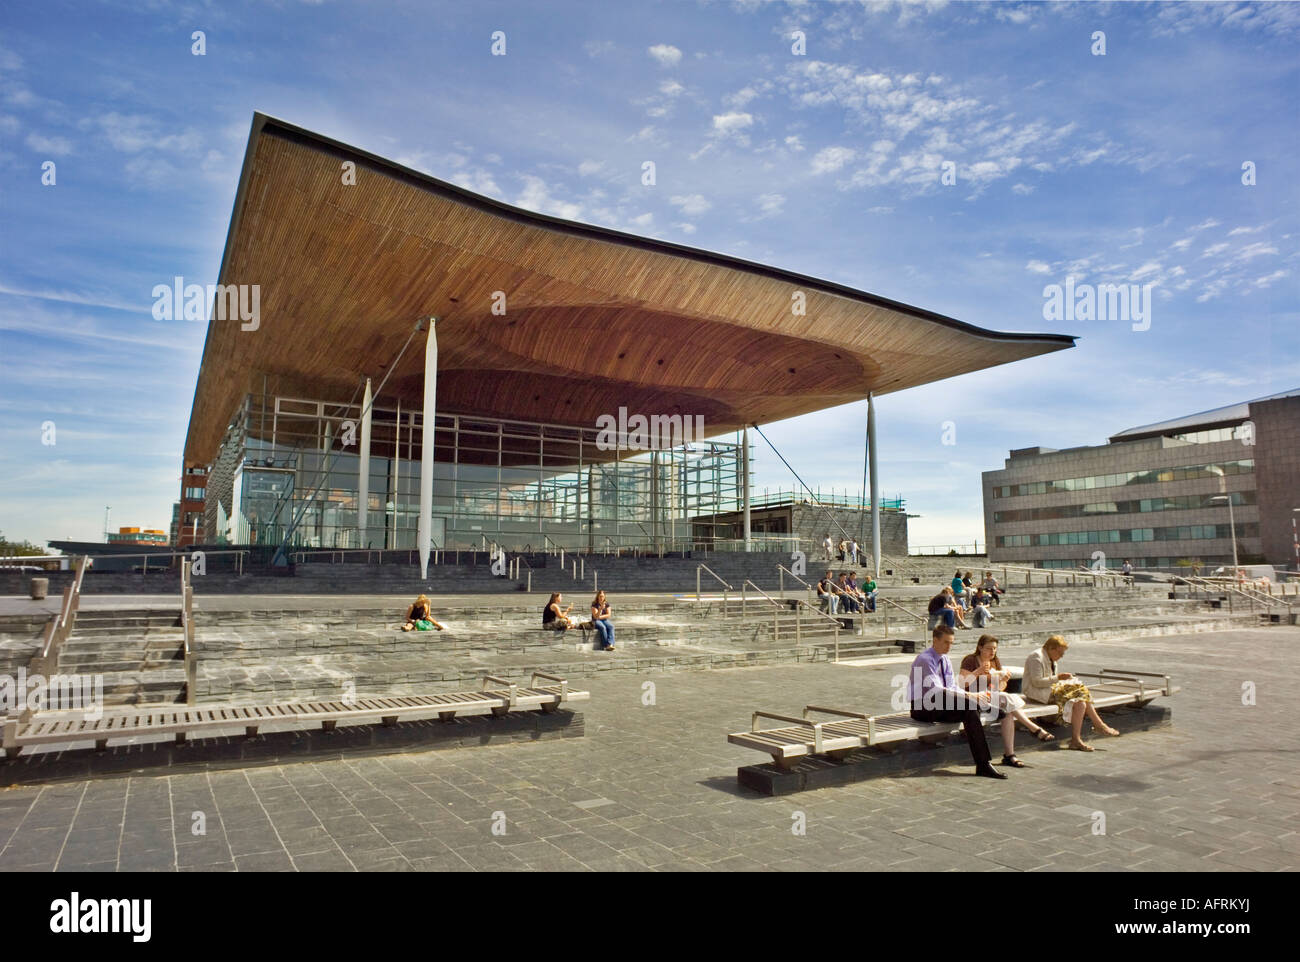 Das Vordach und Fassade von der National Assembly for Wales Gebäude an der Uferpromenade in Cardiff. Stockfoto